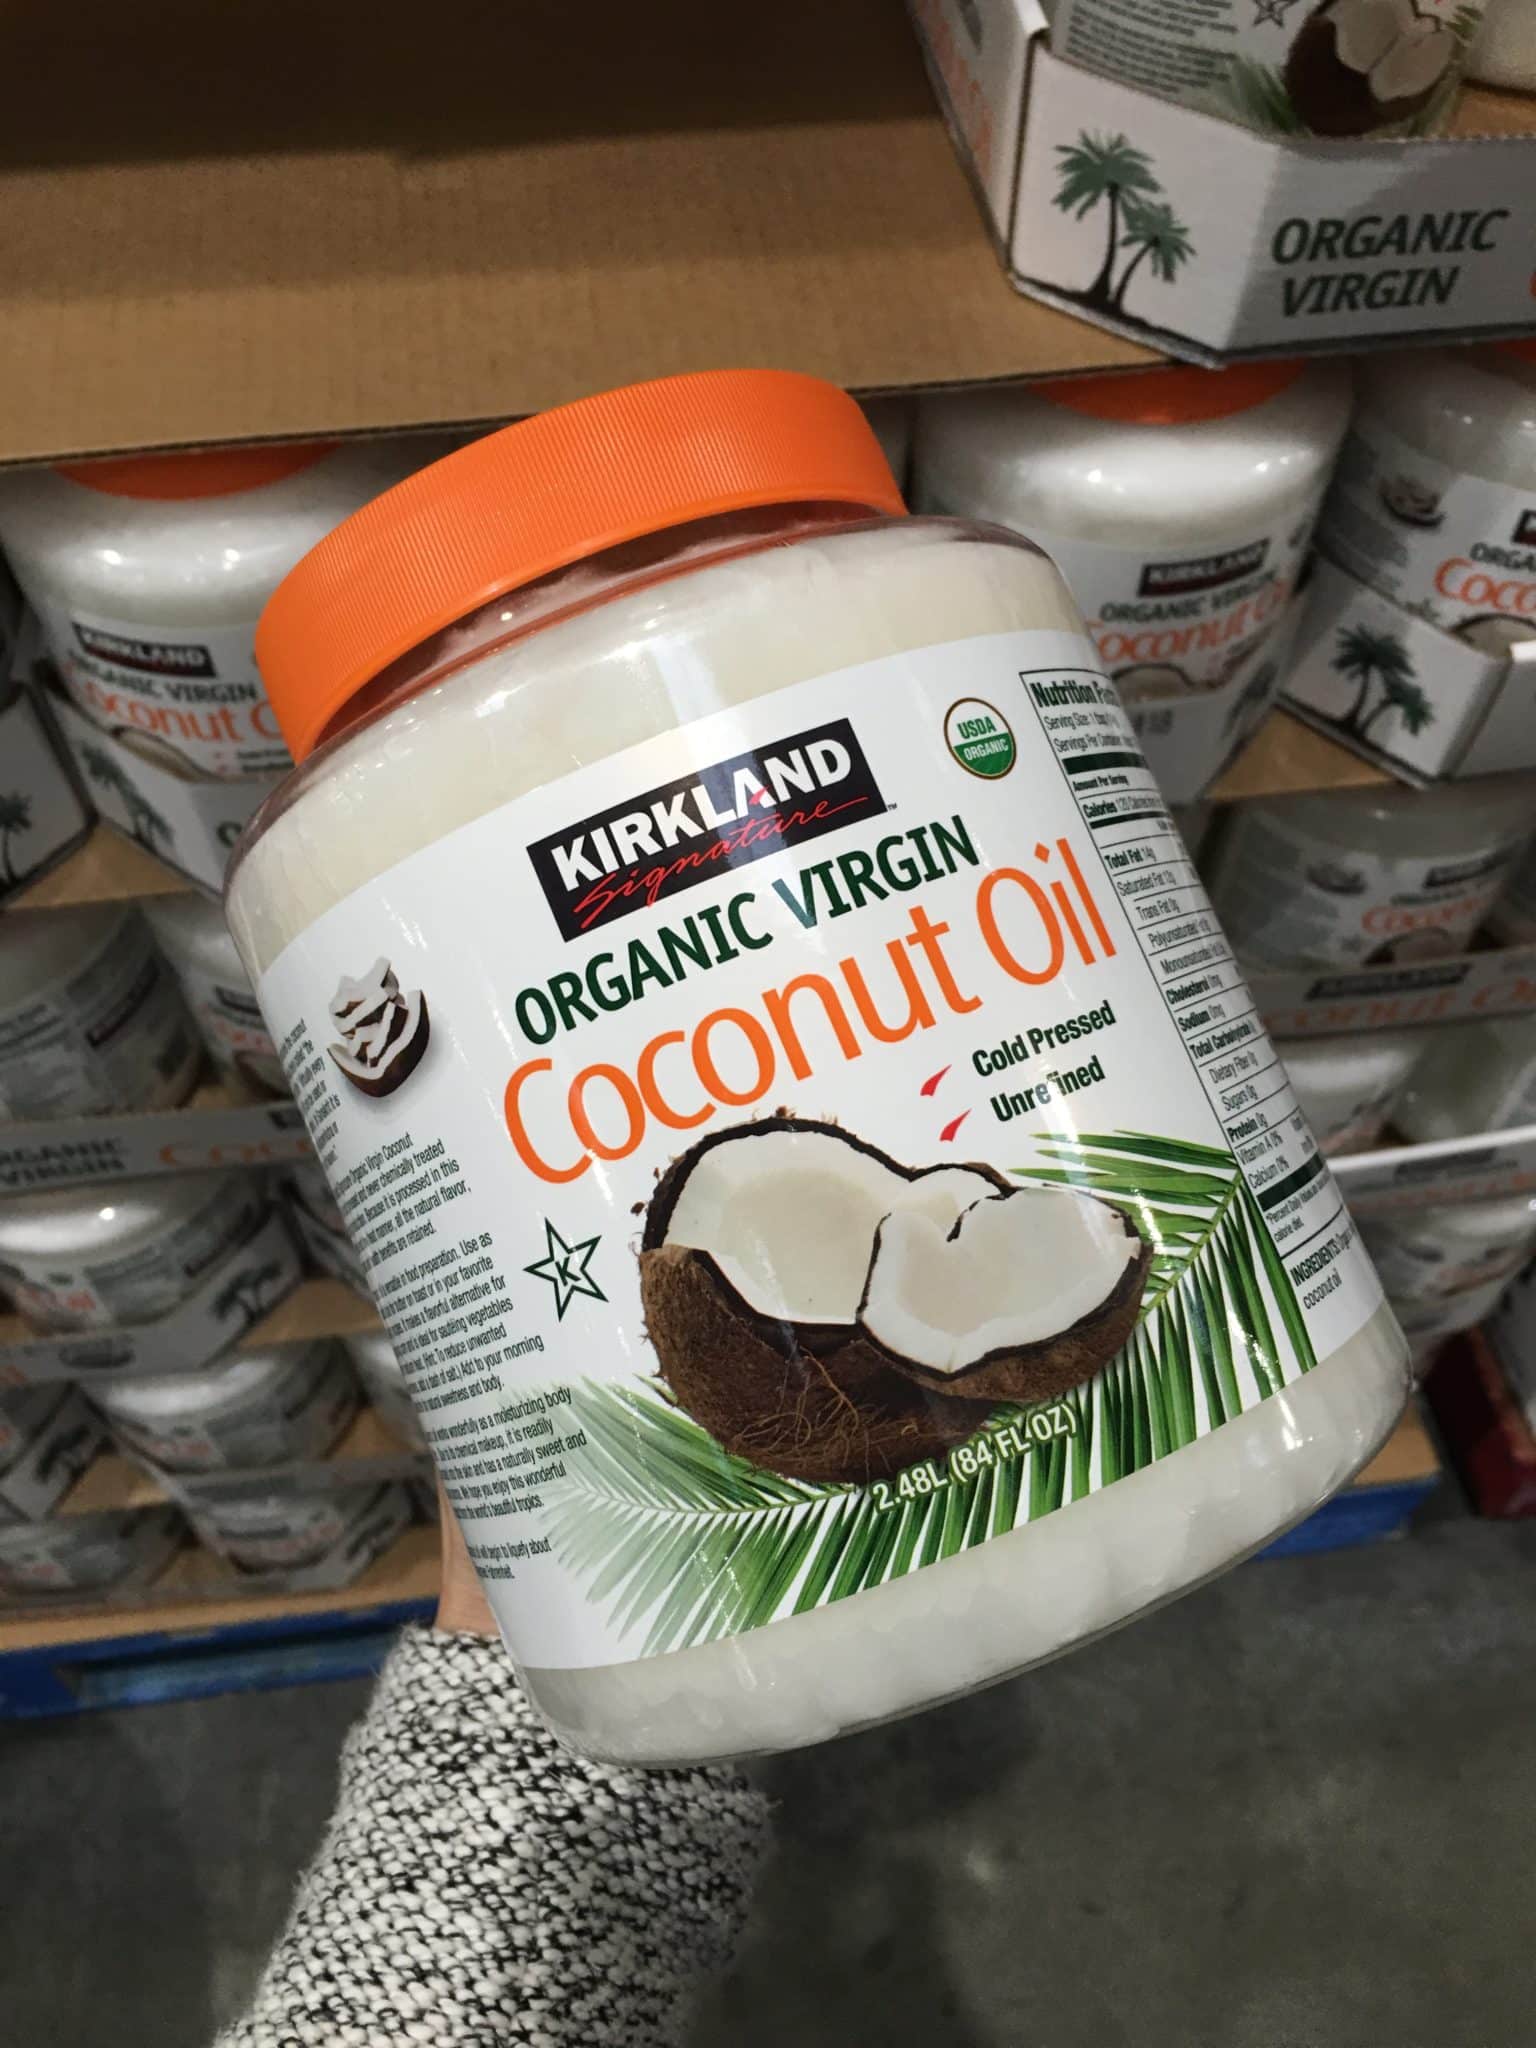 Organic virgin coconut oil from Costco